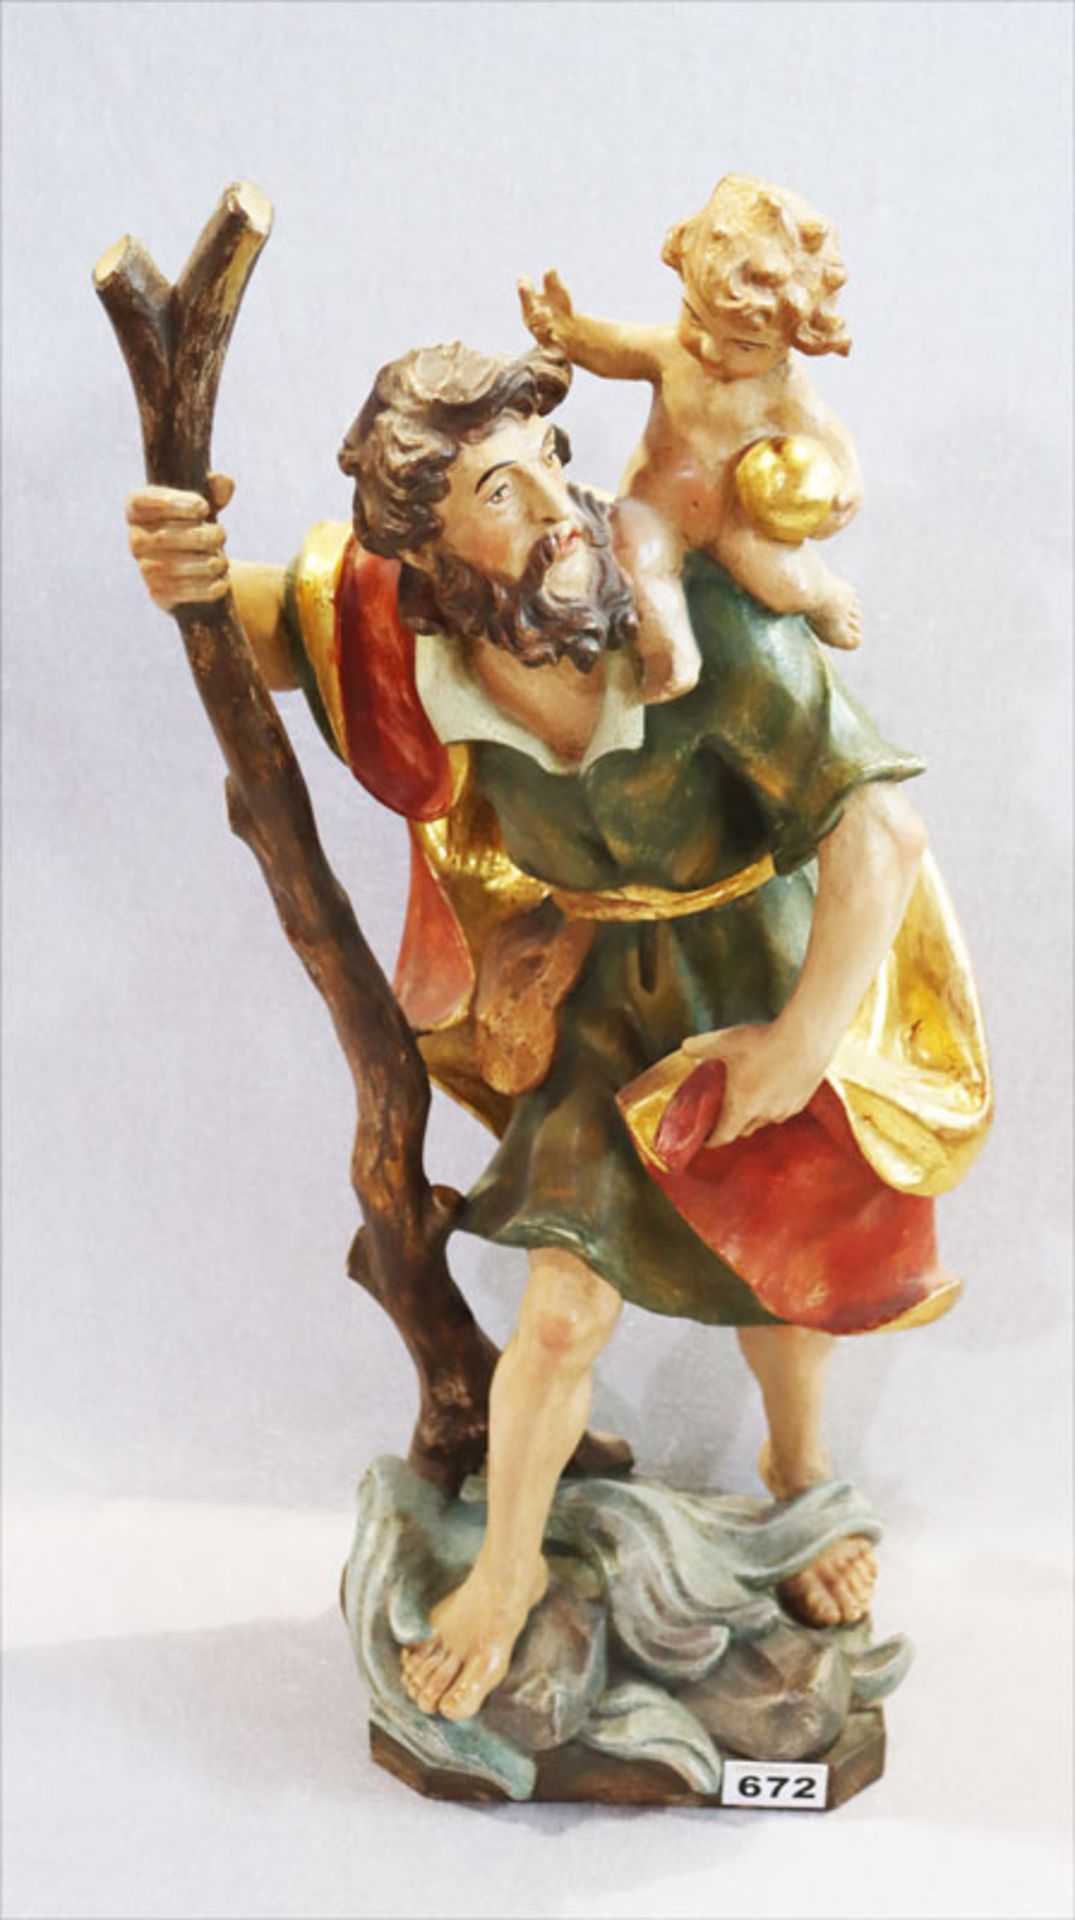 Holzfigur 'Hl. Christophorus', farbig gefaßt, teils mit Blattgold, H 59 cm, leicht berieben